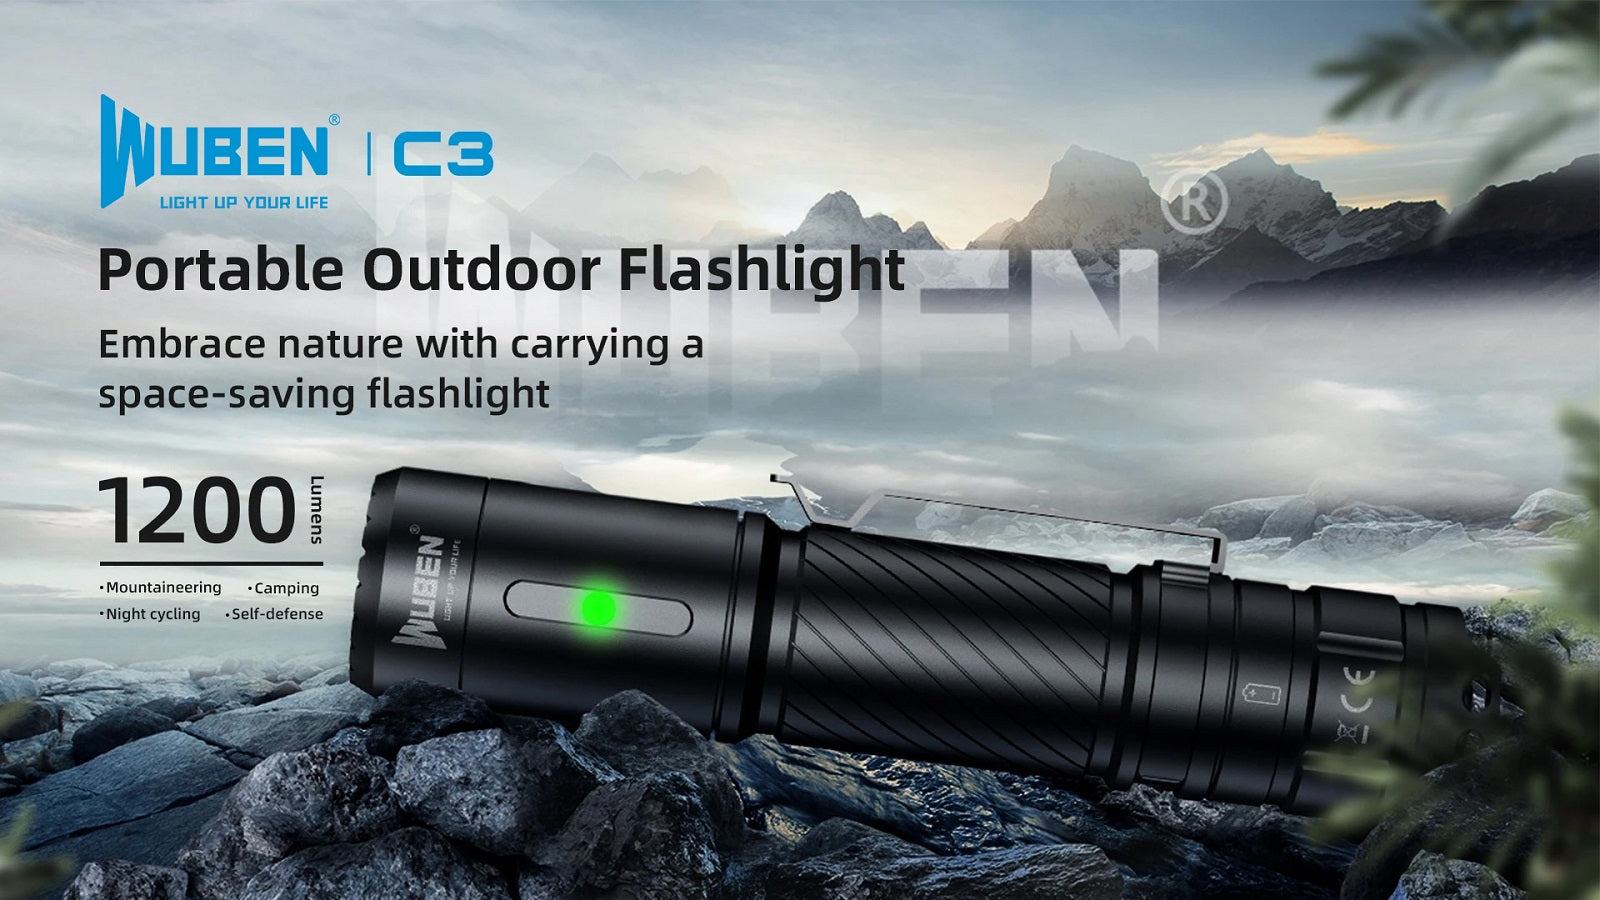 Portable Outdoor Flashlight